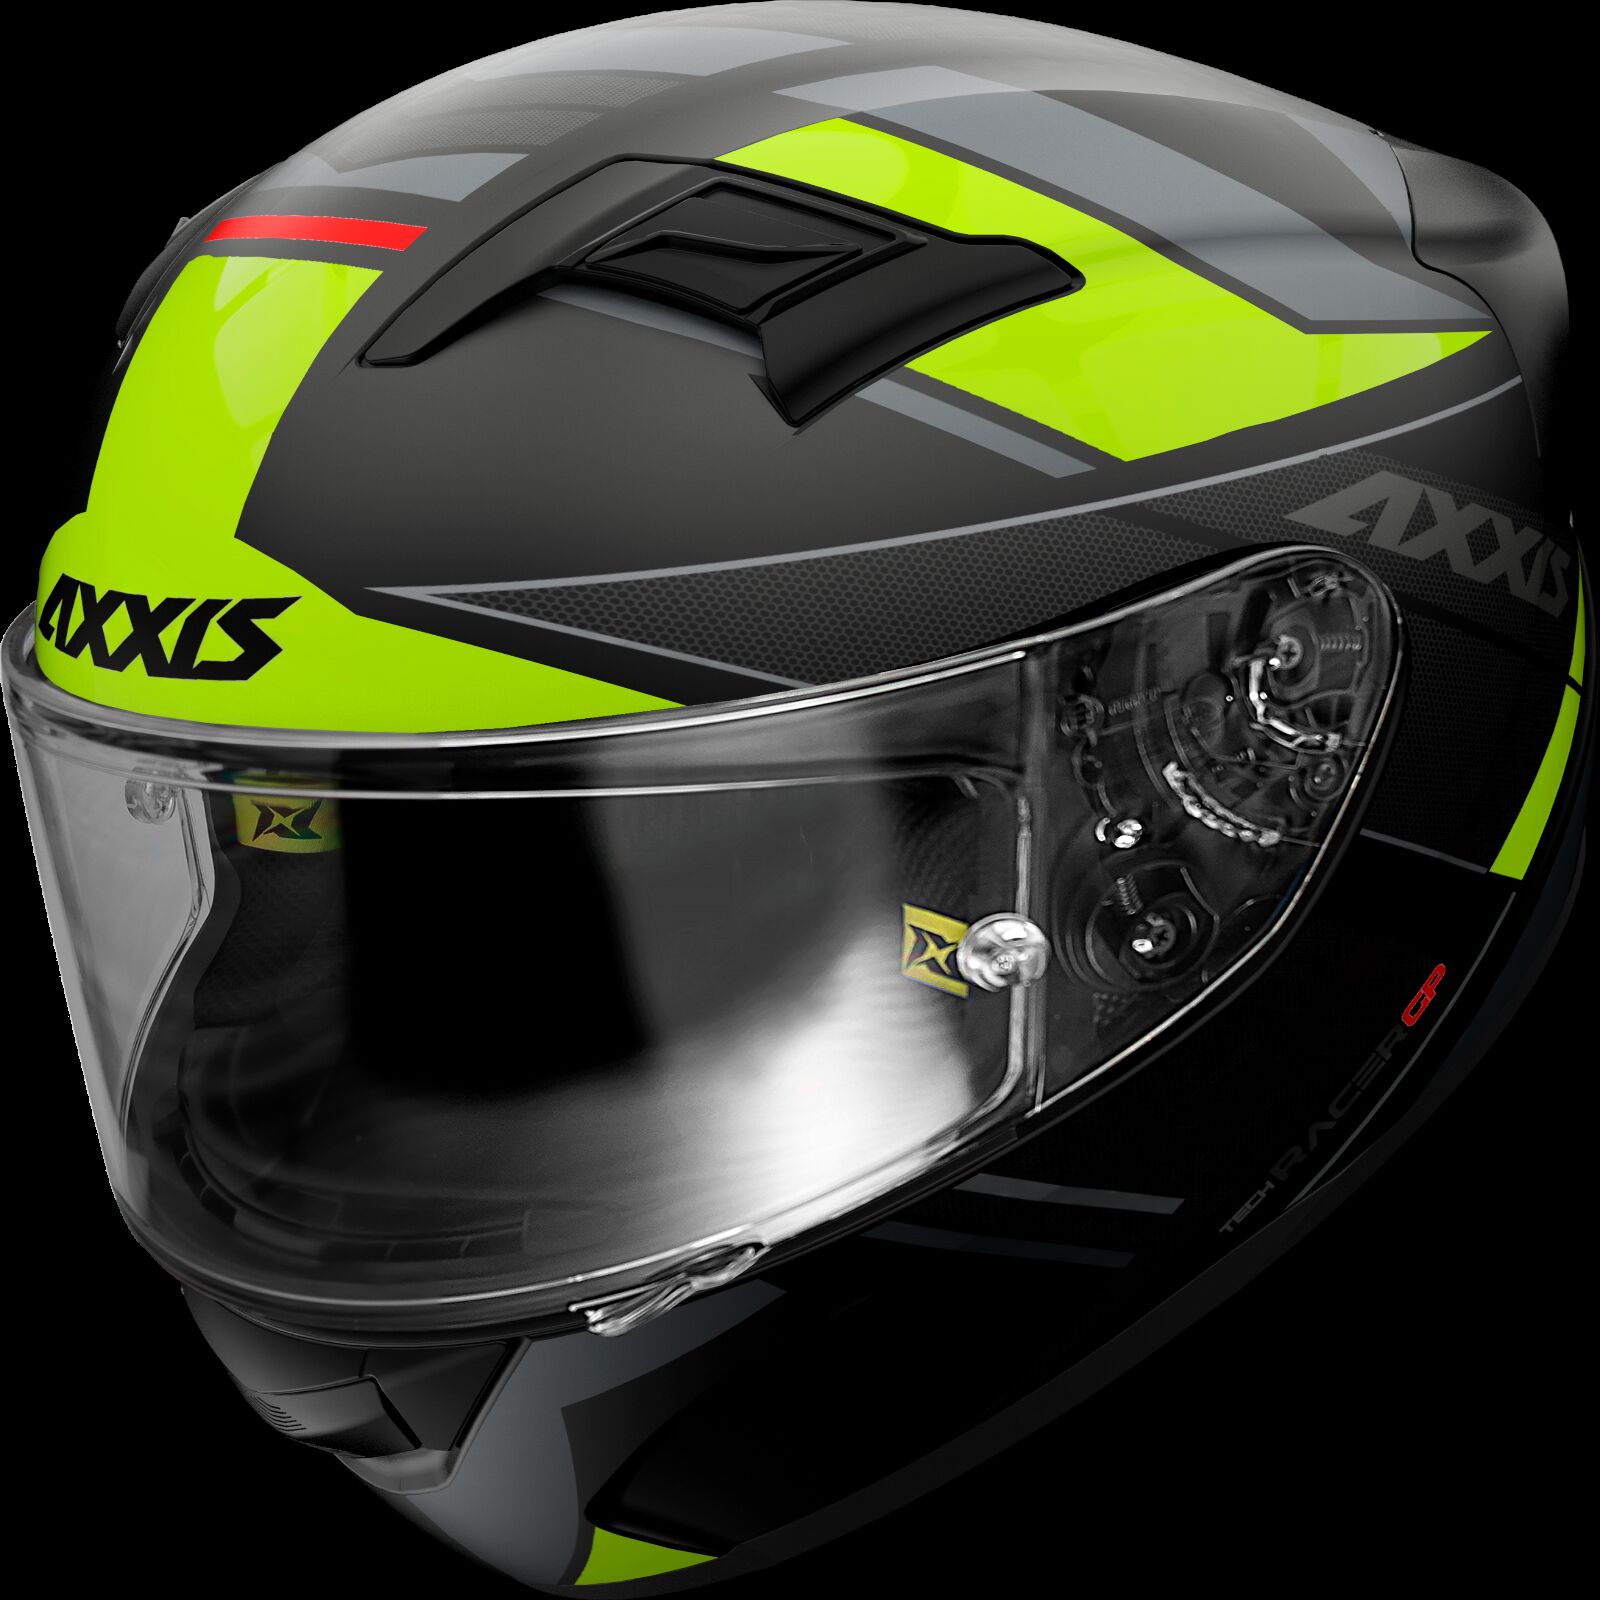 Obrázek produktu Integrální helma AXXIS GP RACER SV FIBER TECH matná fluo žlutá XS 41048971353